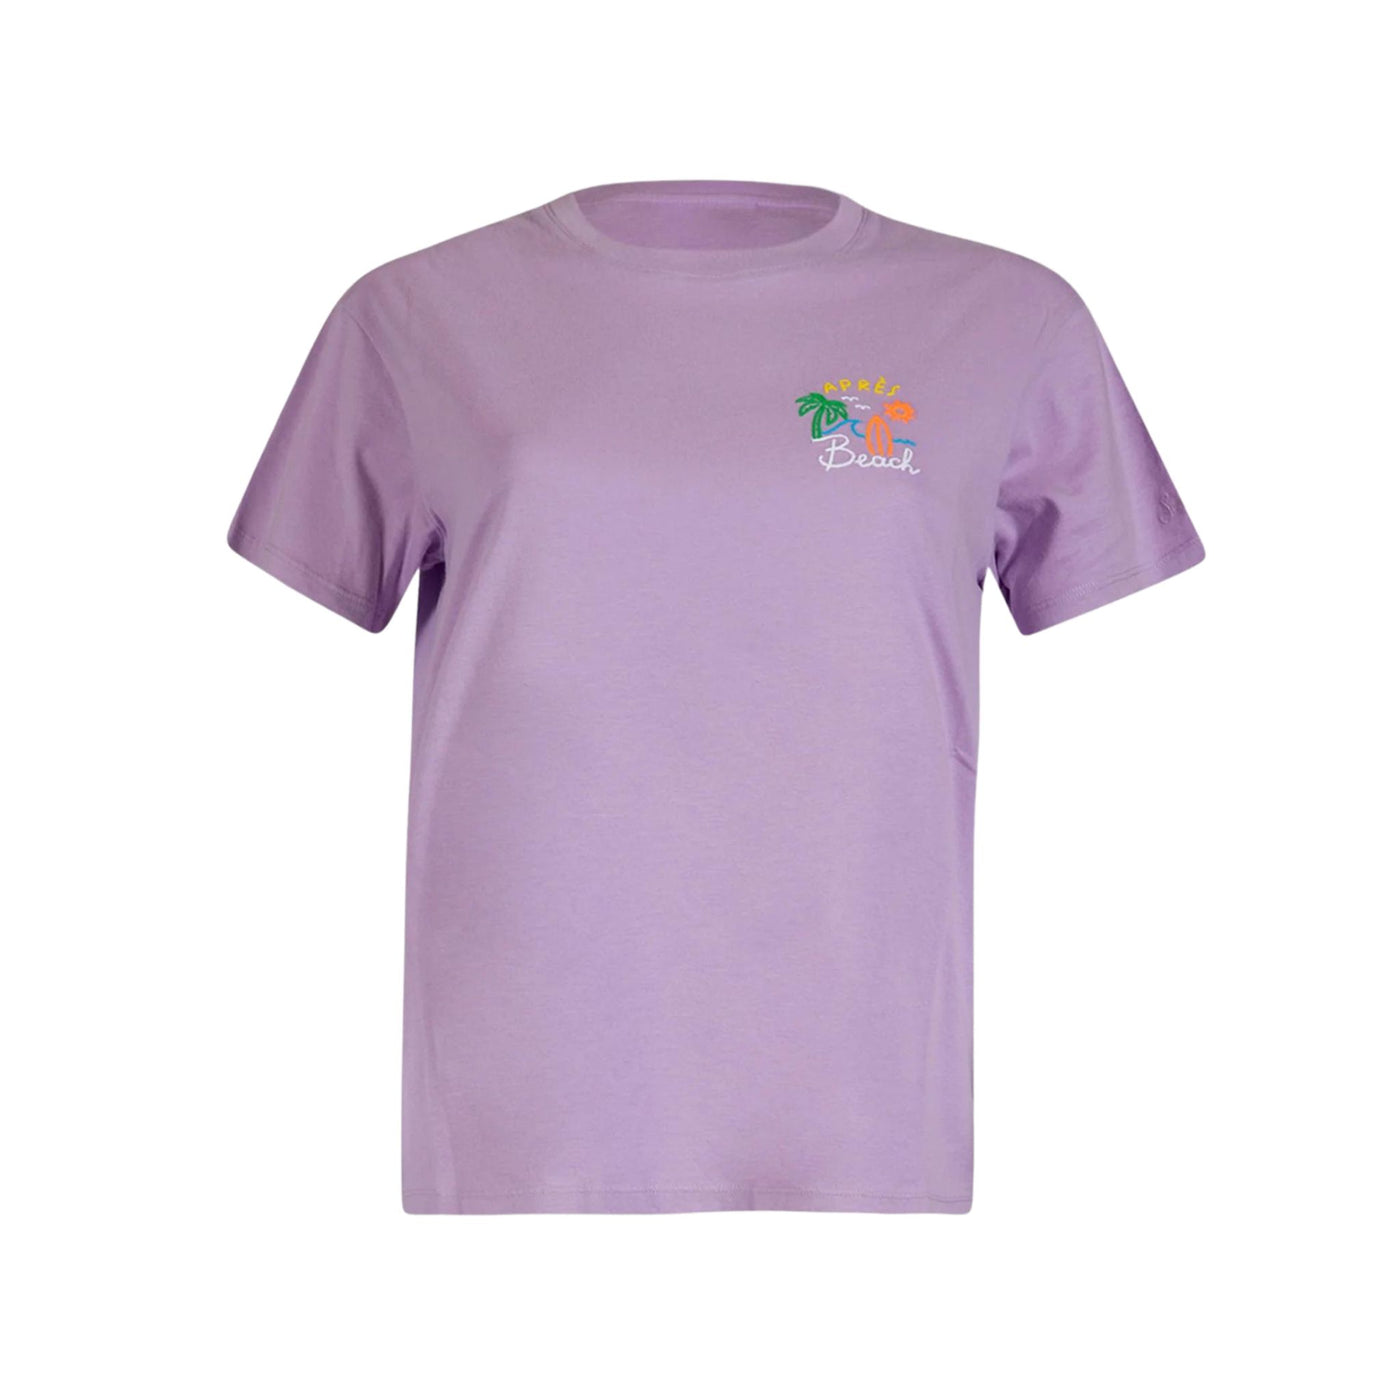 T-shirt Donna lilla con logo sulla manica